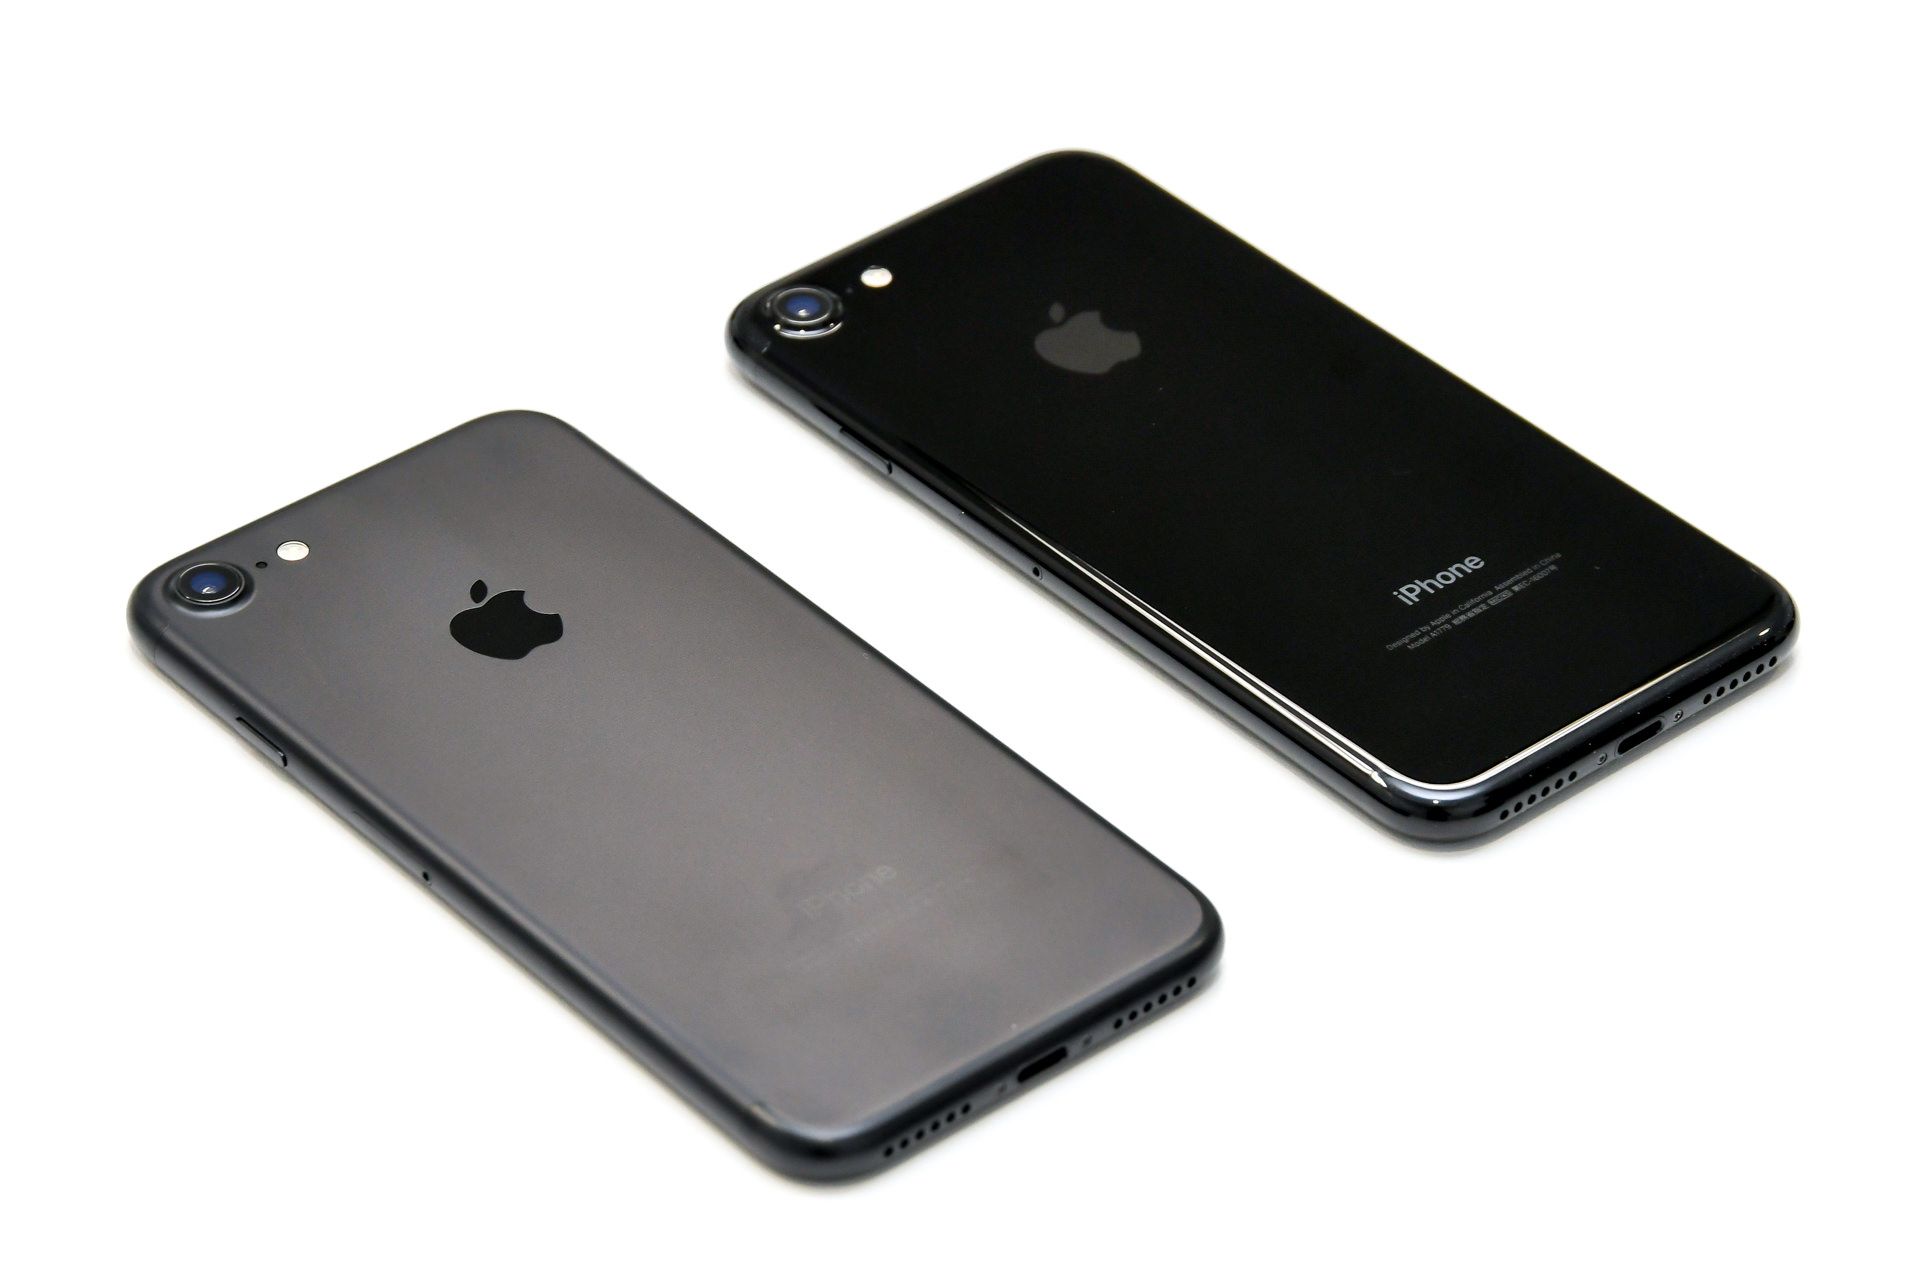 iPhone 7 ブラック / ジェットブラック 外観比較 – でこにく